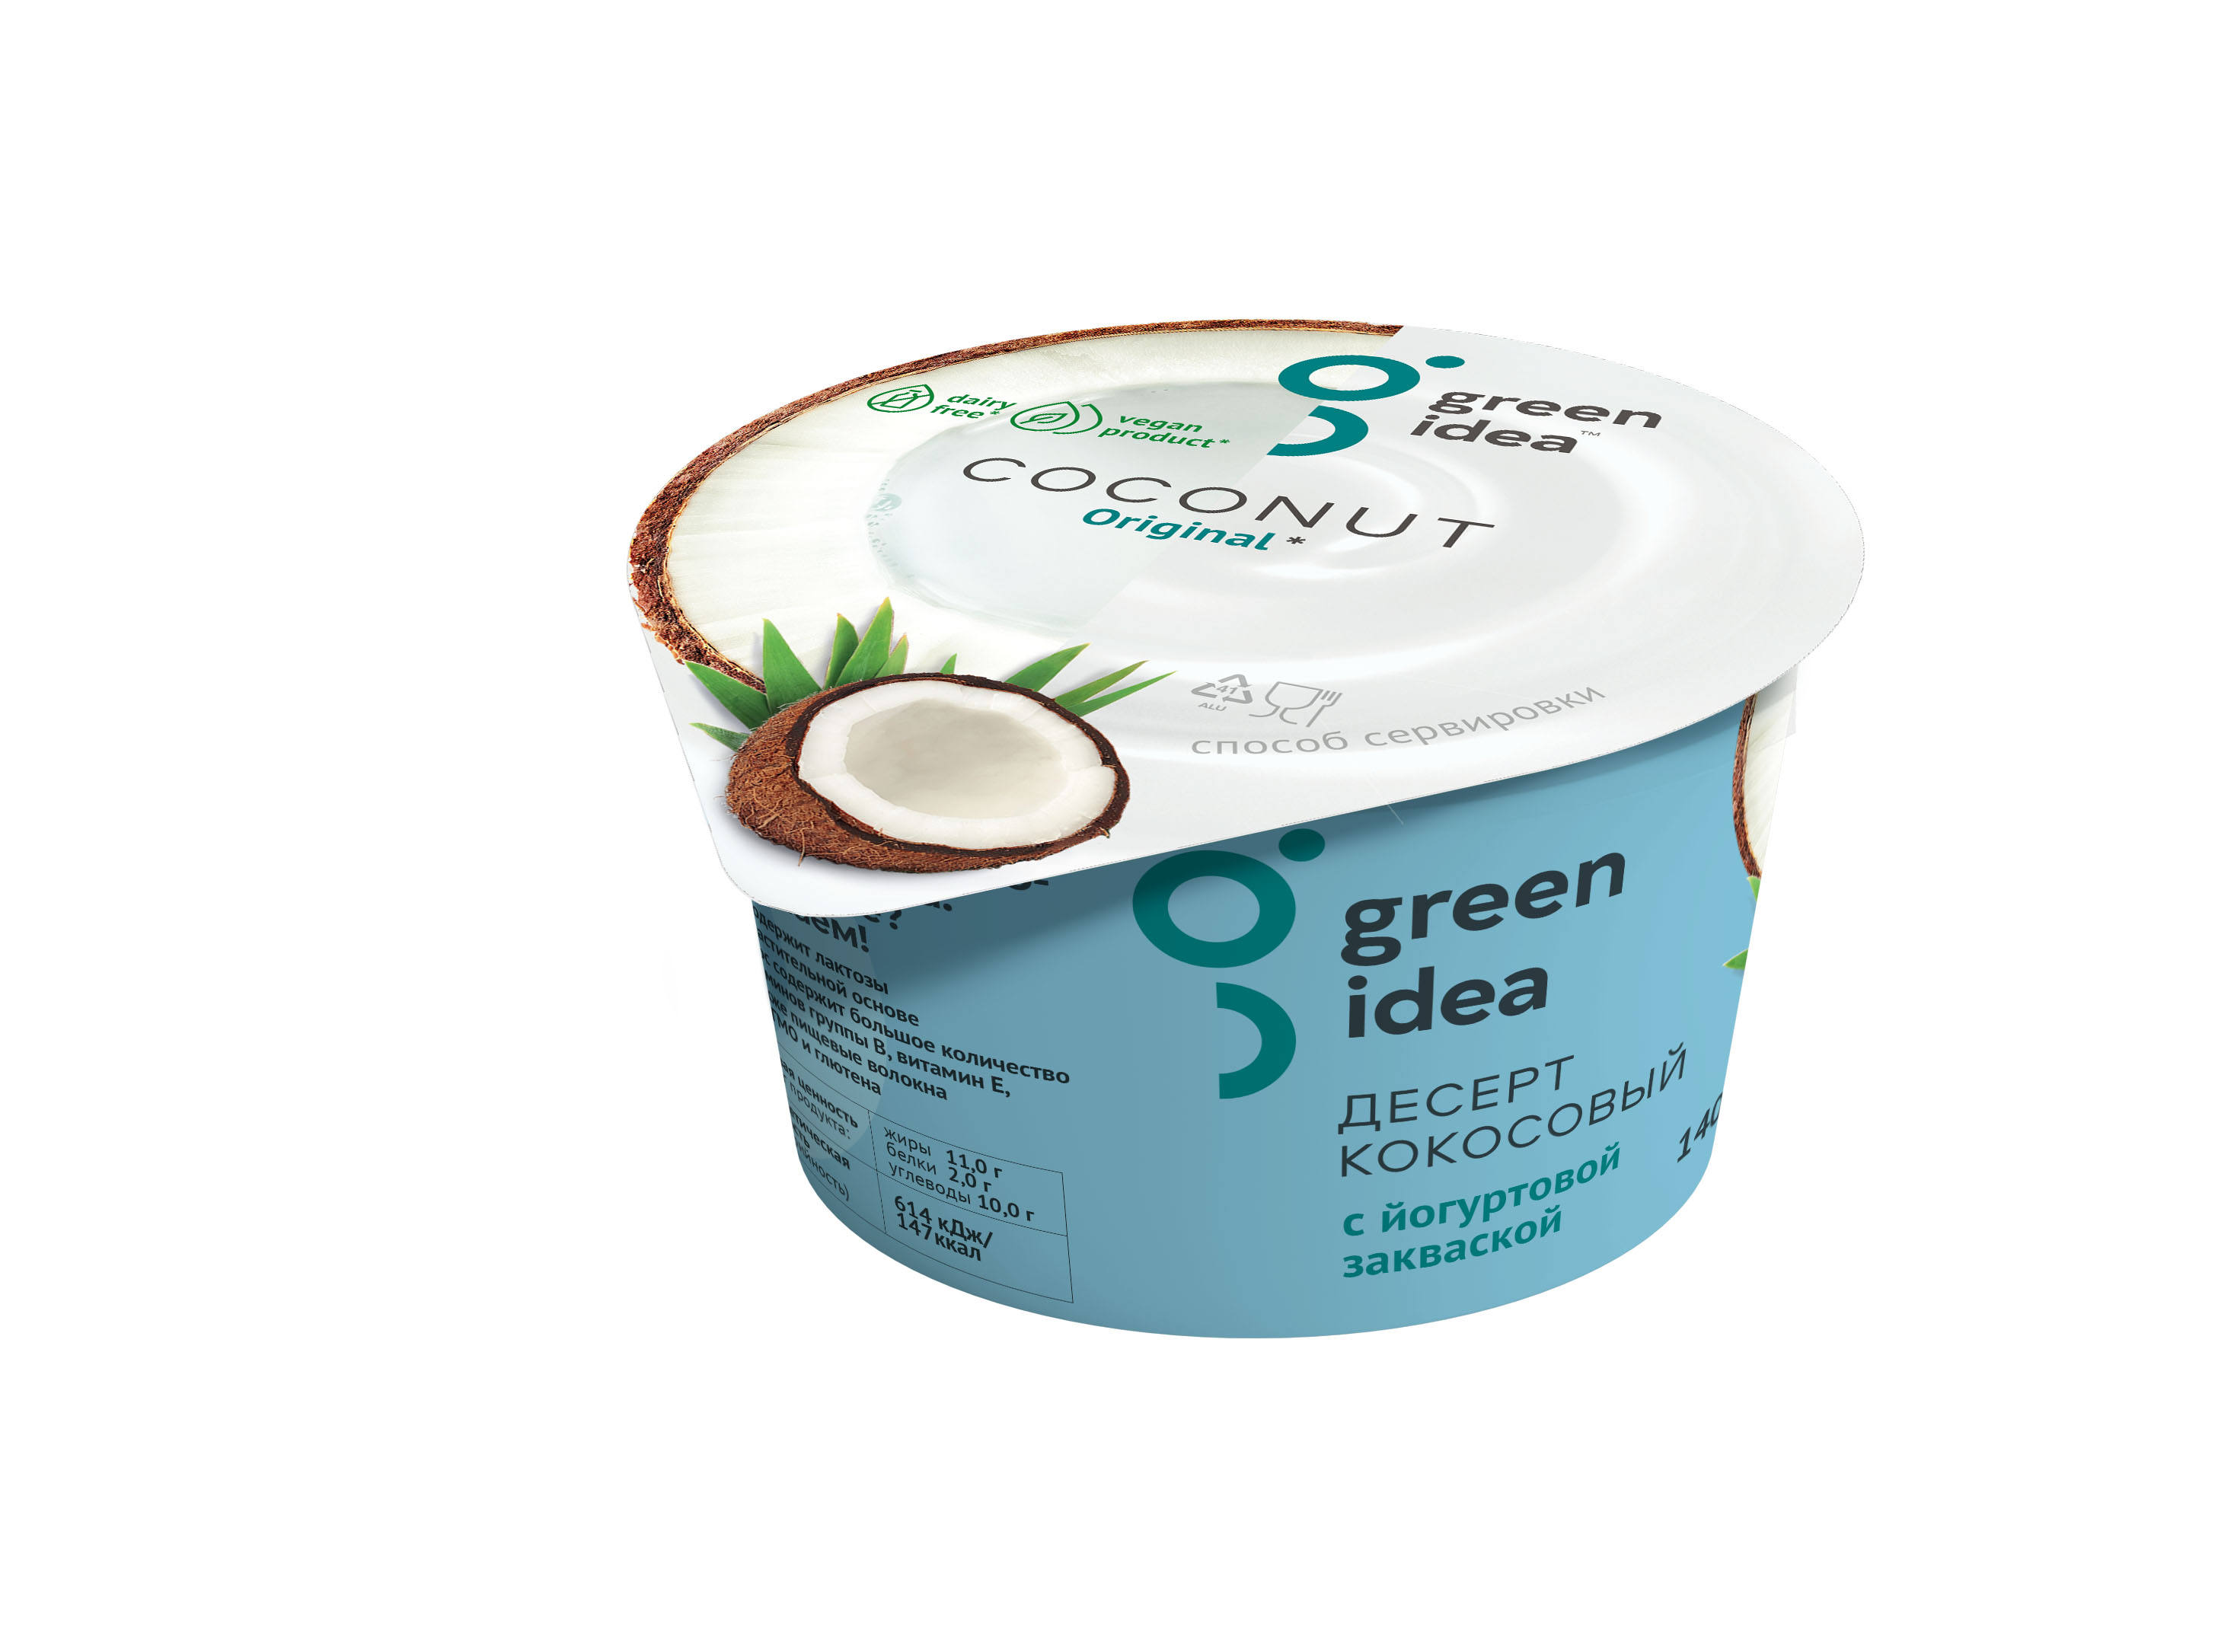 Десерт кокосовый с йогуртовой закваской "Green Idea" 140 г